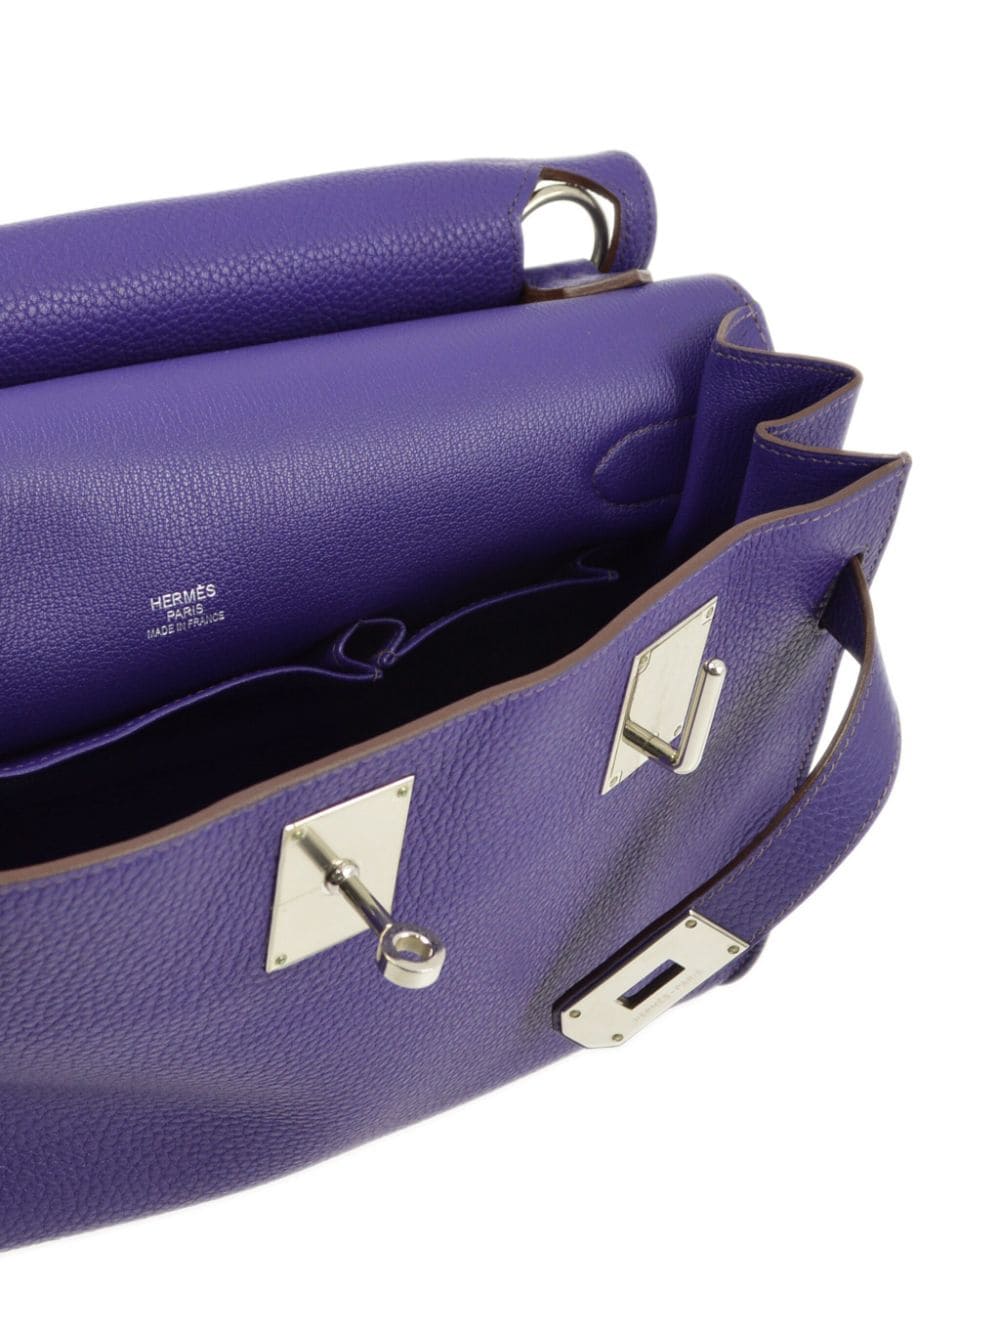 Pre-owned Hermes 2011 Jypsiere 37 Shoulder Bag In Purple